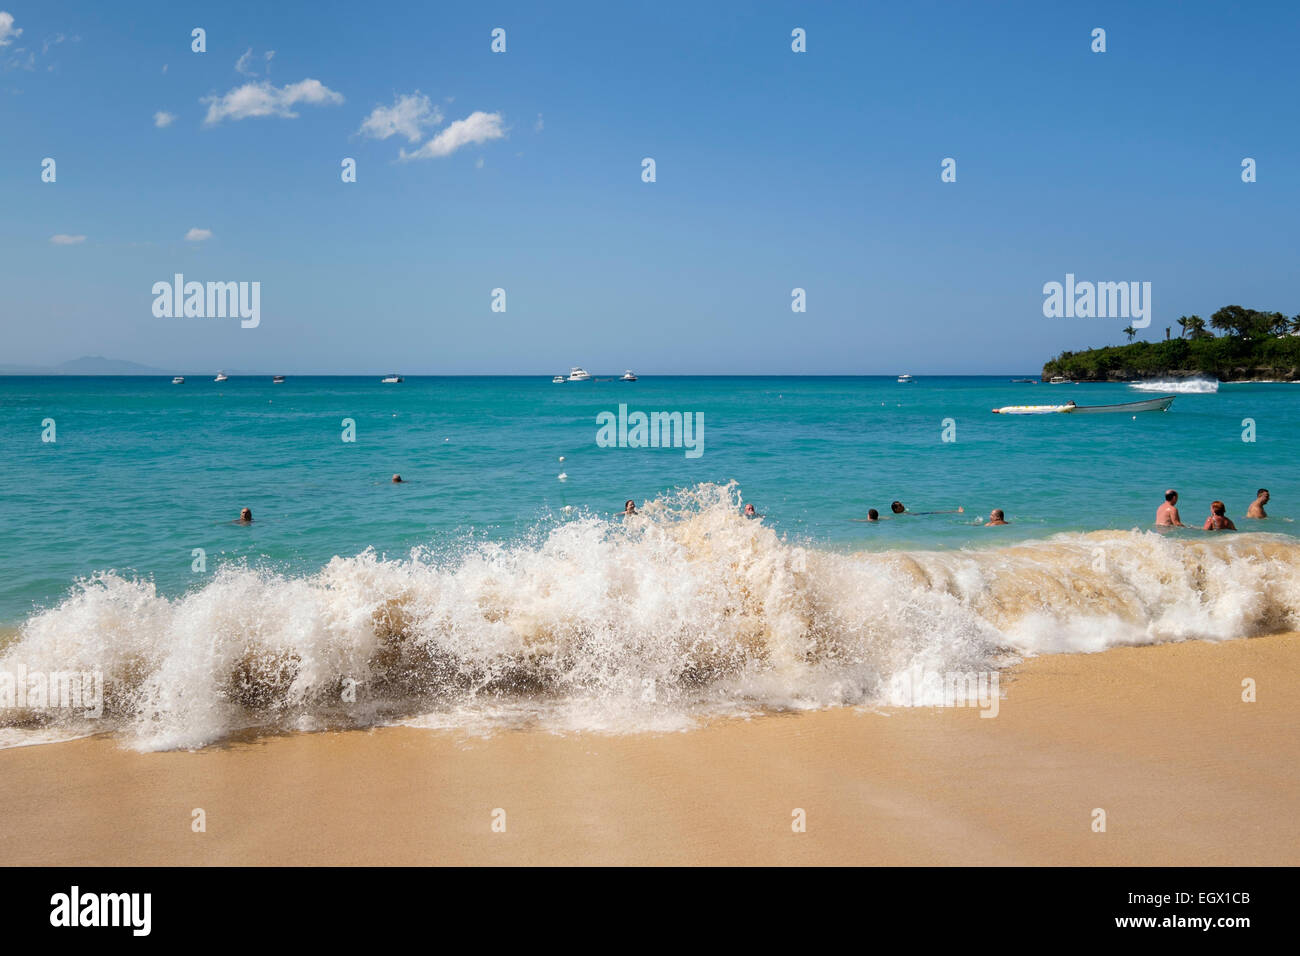 Urlauber und Einheimische schwimmen im Atlantik Wellen in Holiday Resort von Sosua, Dominikanische Republik, Karibik Inseln Stockfoto